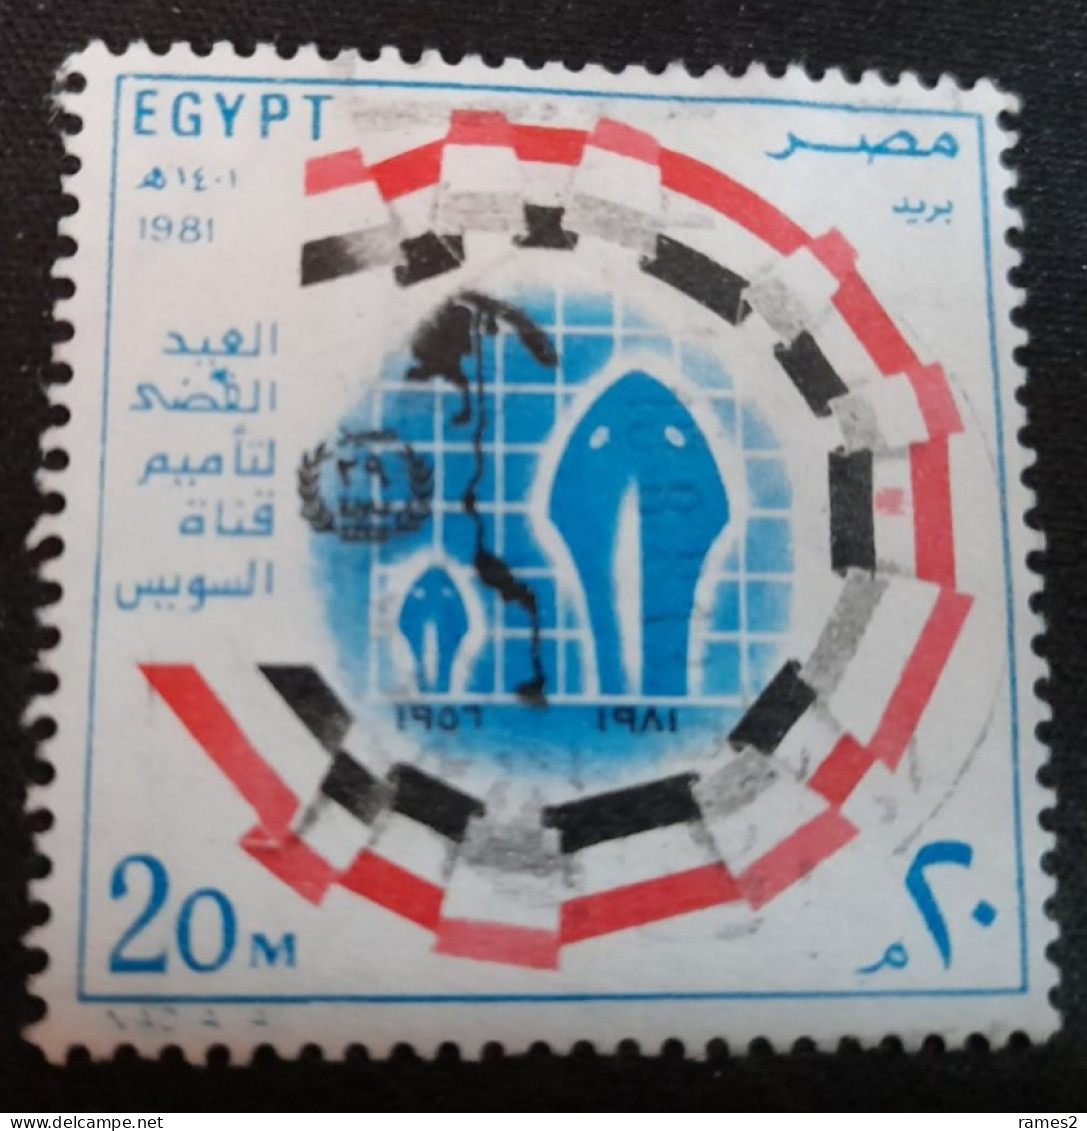 Egypte > 1953-.... République > 1980-89 > Oblitérés N° 1147 - Oblitérés